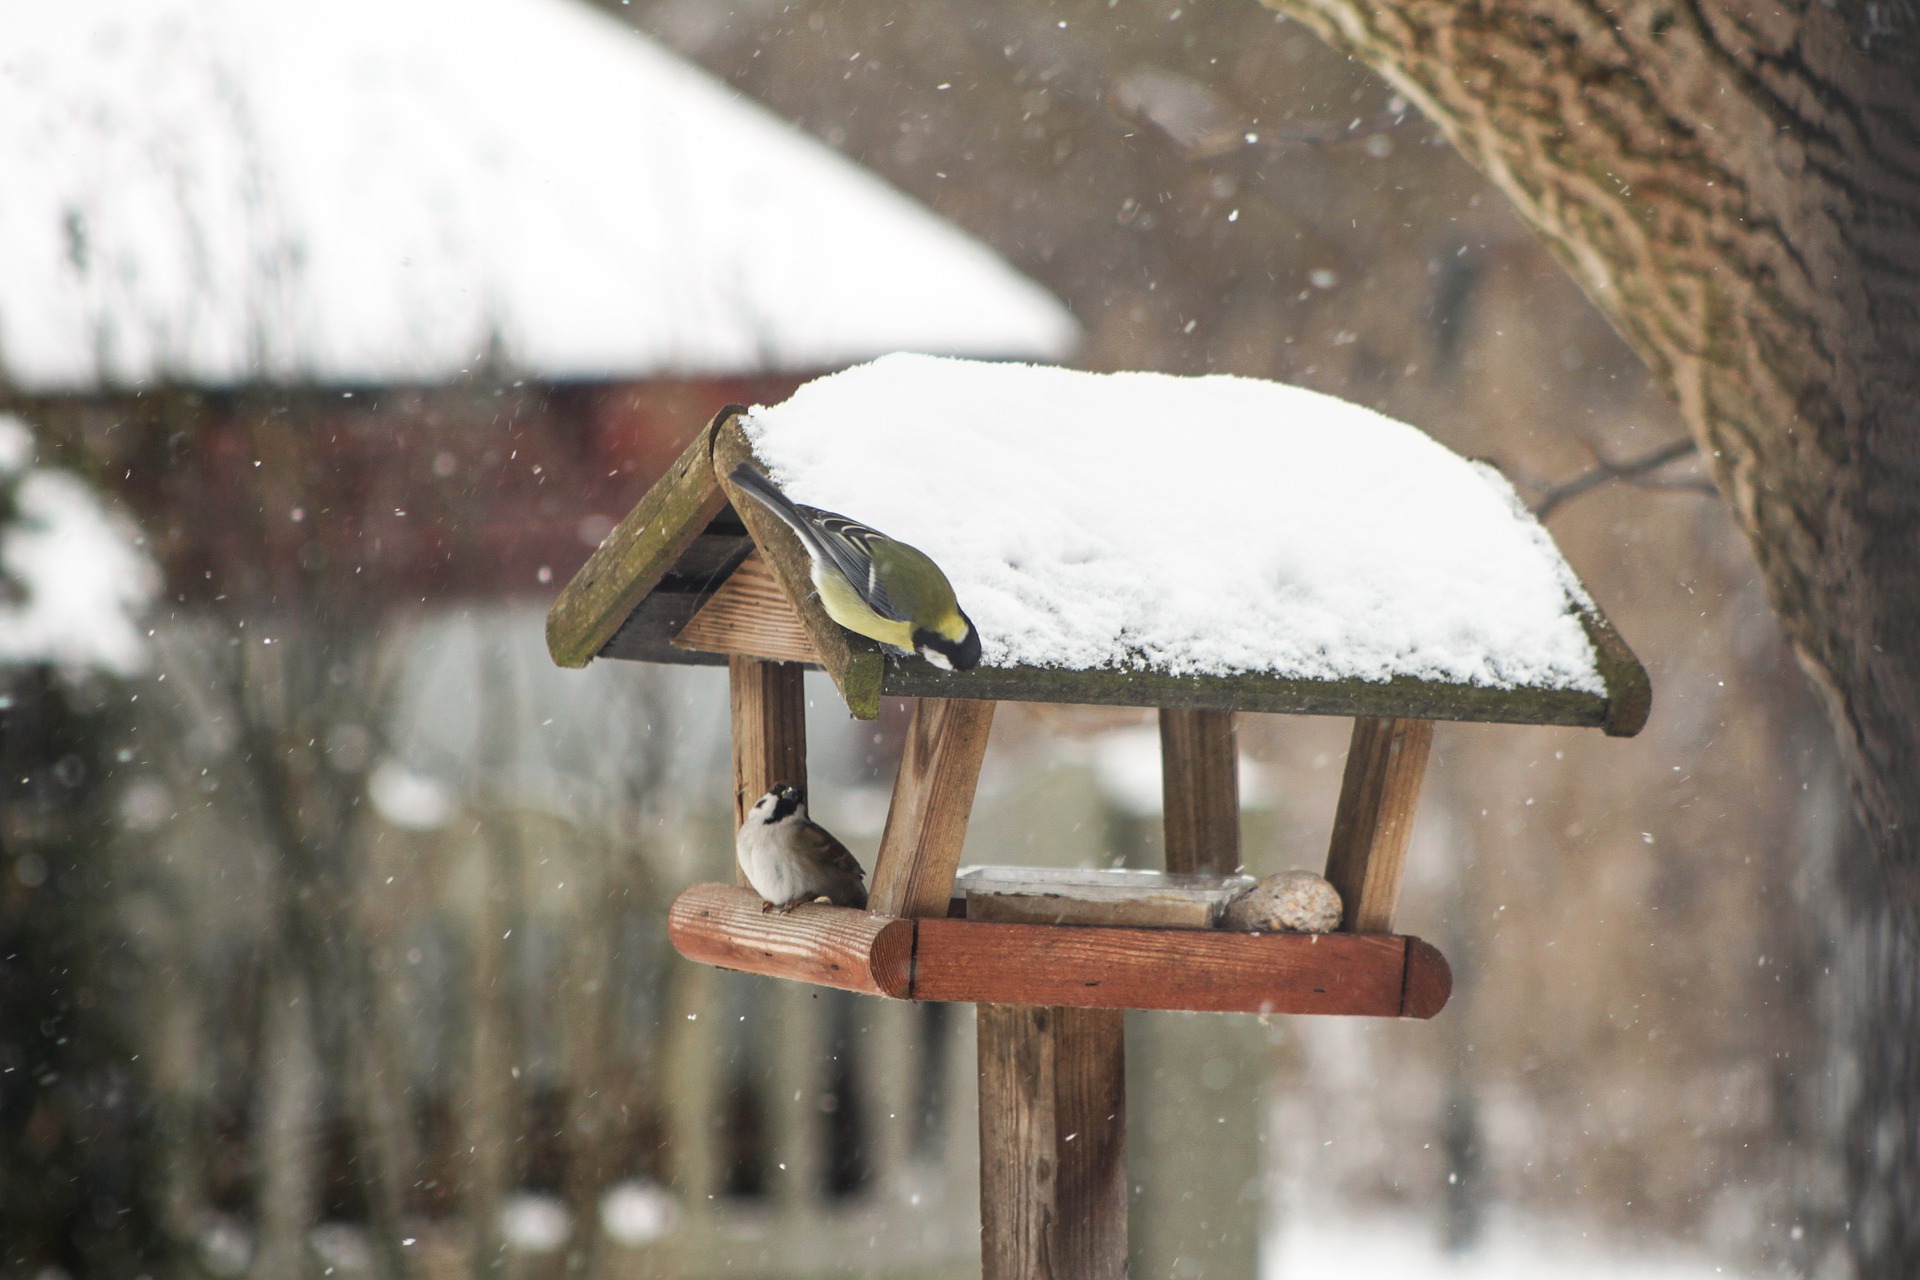 Drobne ptaki przy karmniku dla ptaków. Źródło: pixabay.com